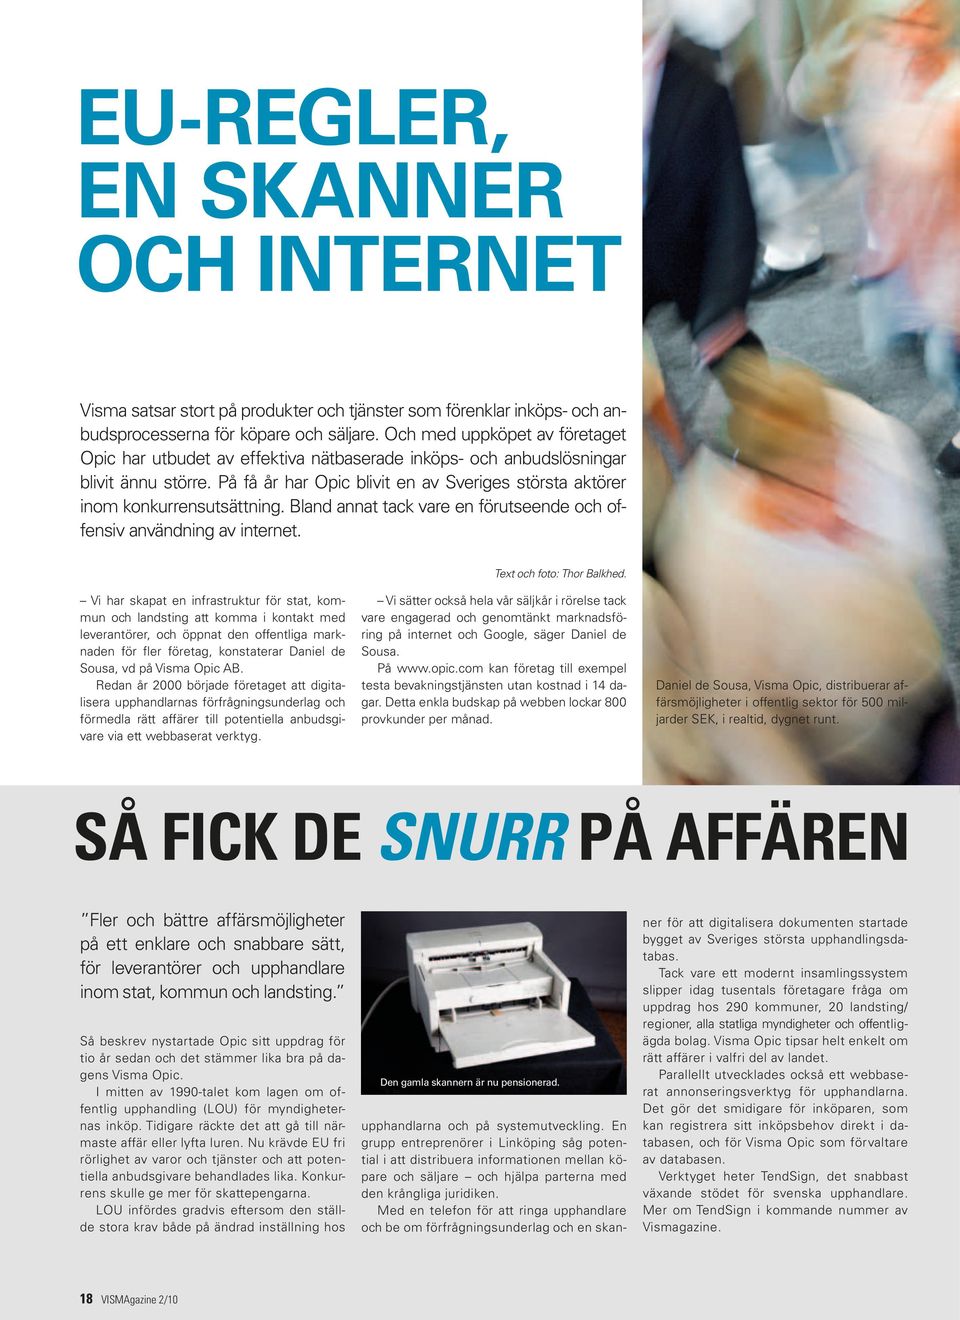 På få år har Opic blivit en av Sveriges största aktörer inom konkurrensutsättning. Bland annat tack vare en förutseende och offensiv användning av internet. Text och foto: Thor Balkhed.